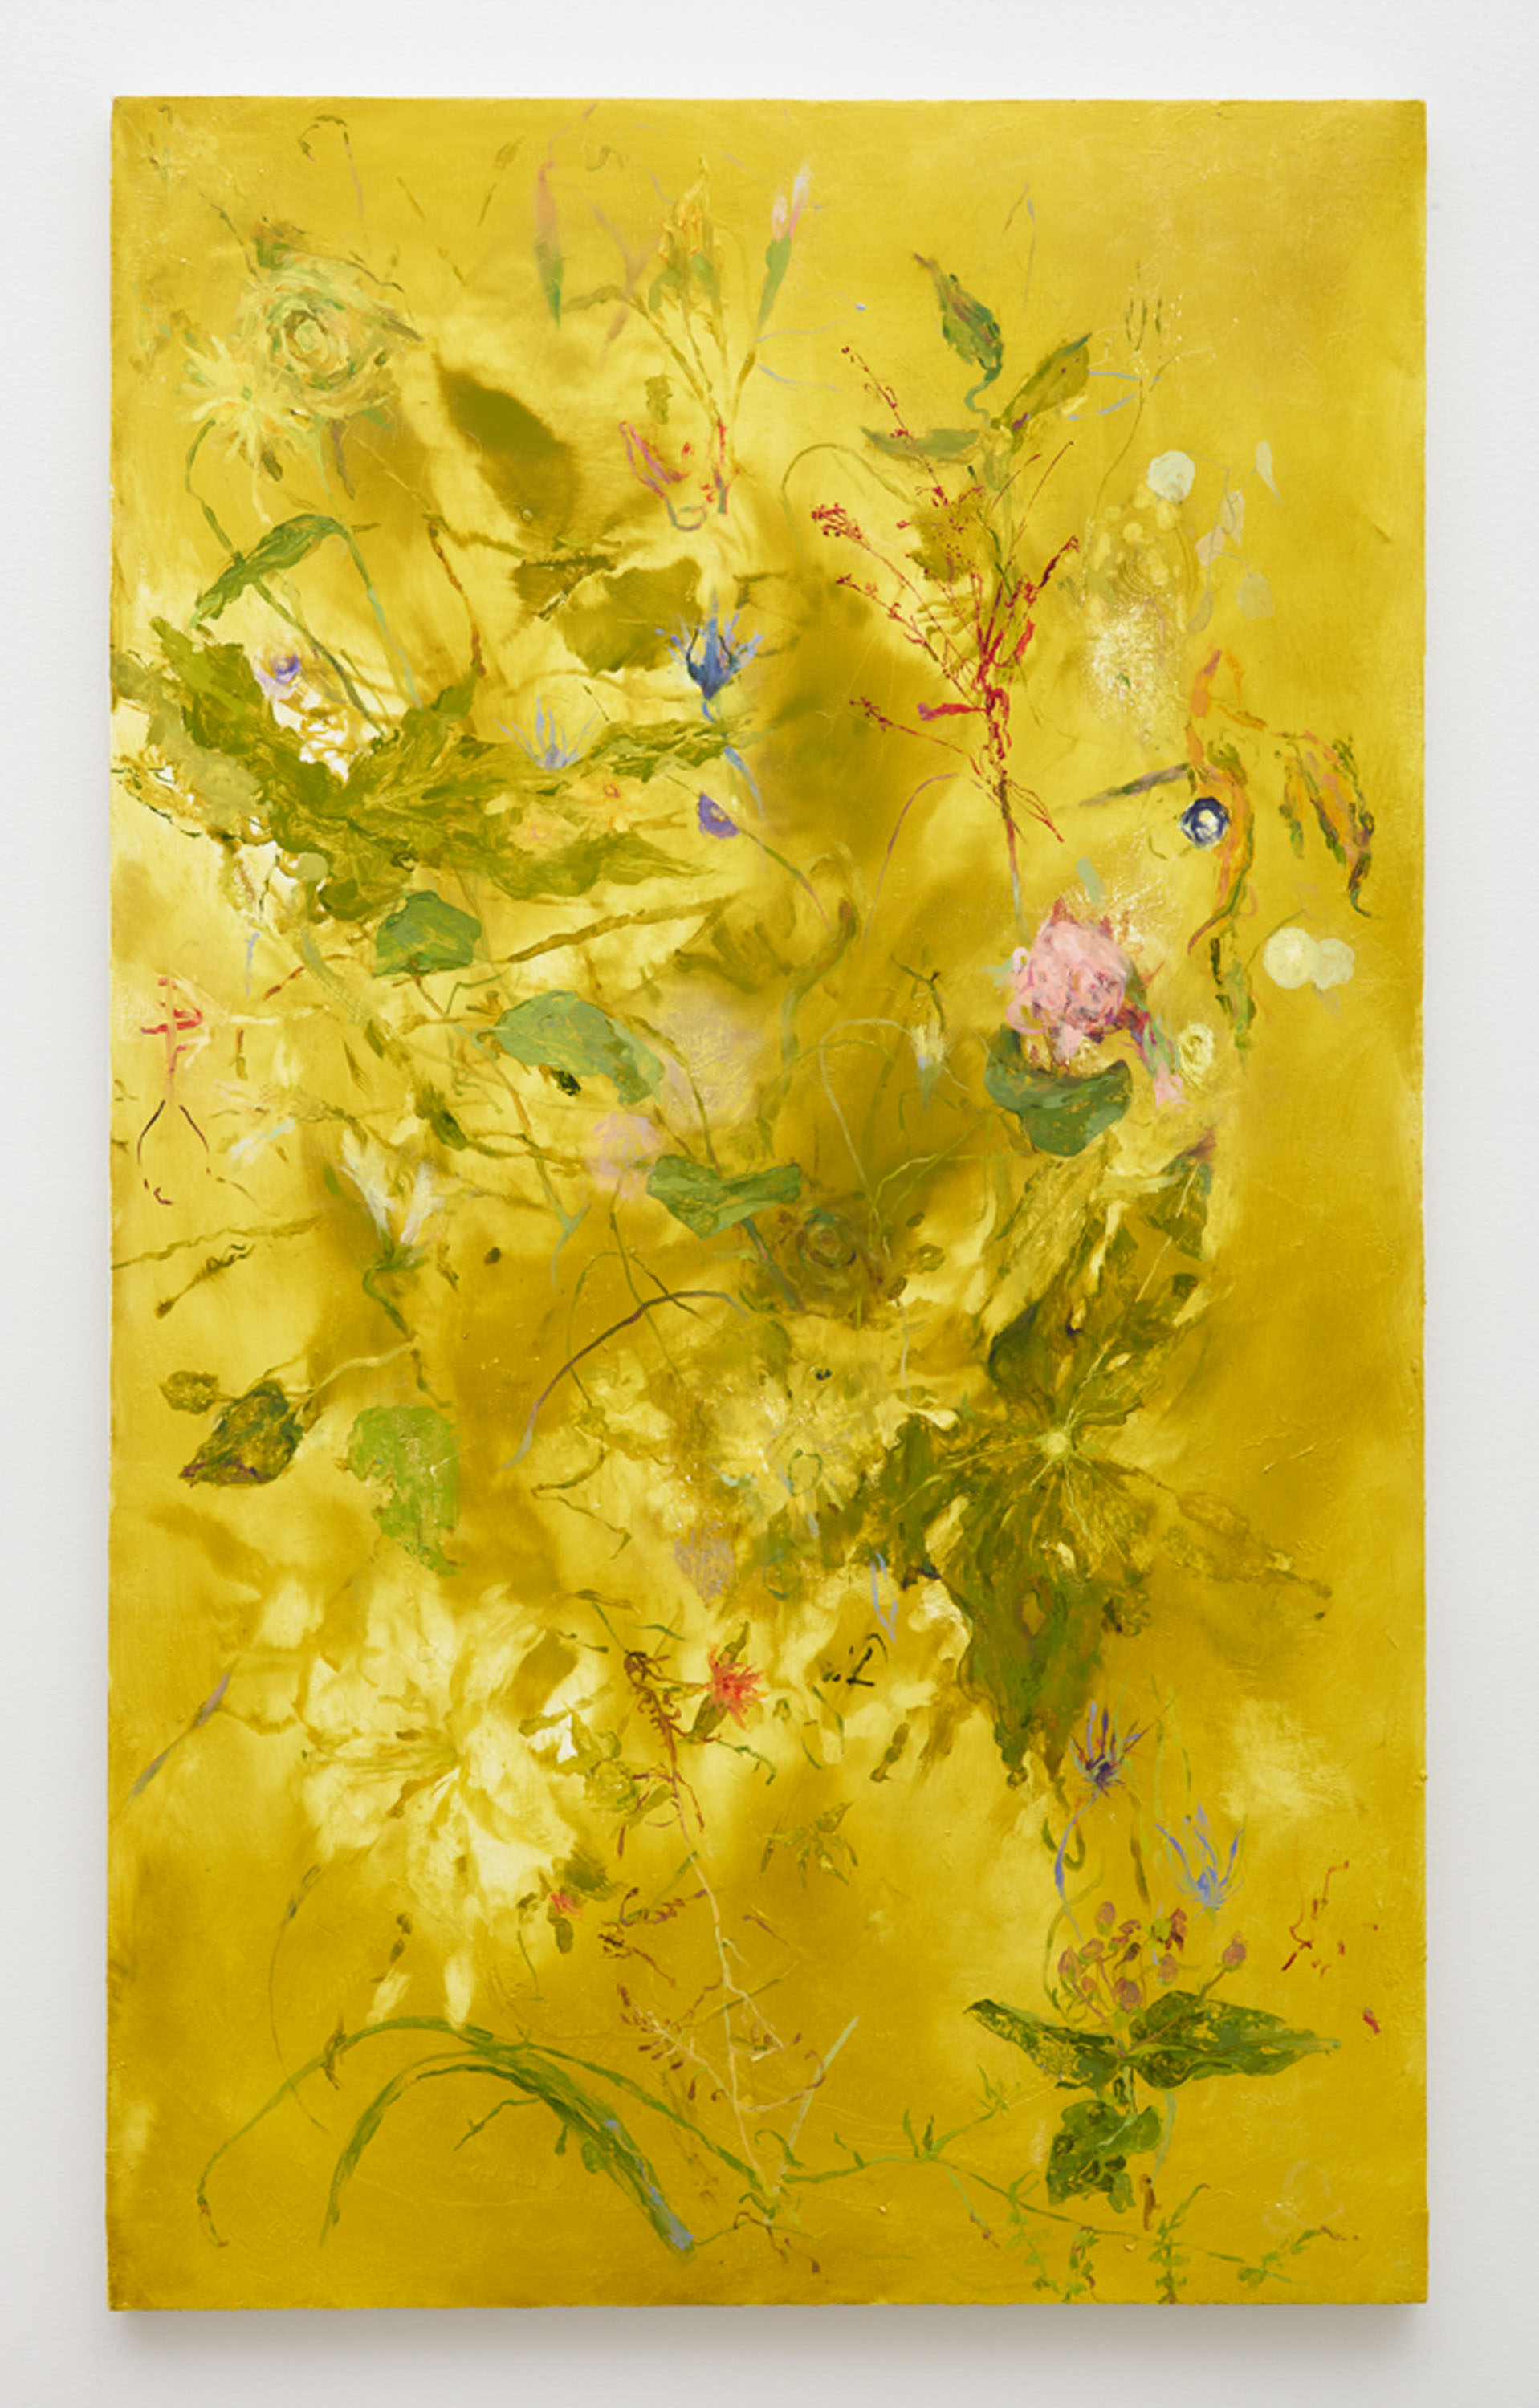 Breathing Room, Flowers For Frank Bramblett, 2015